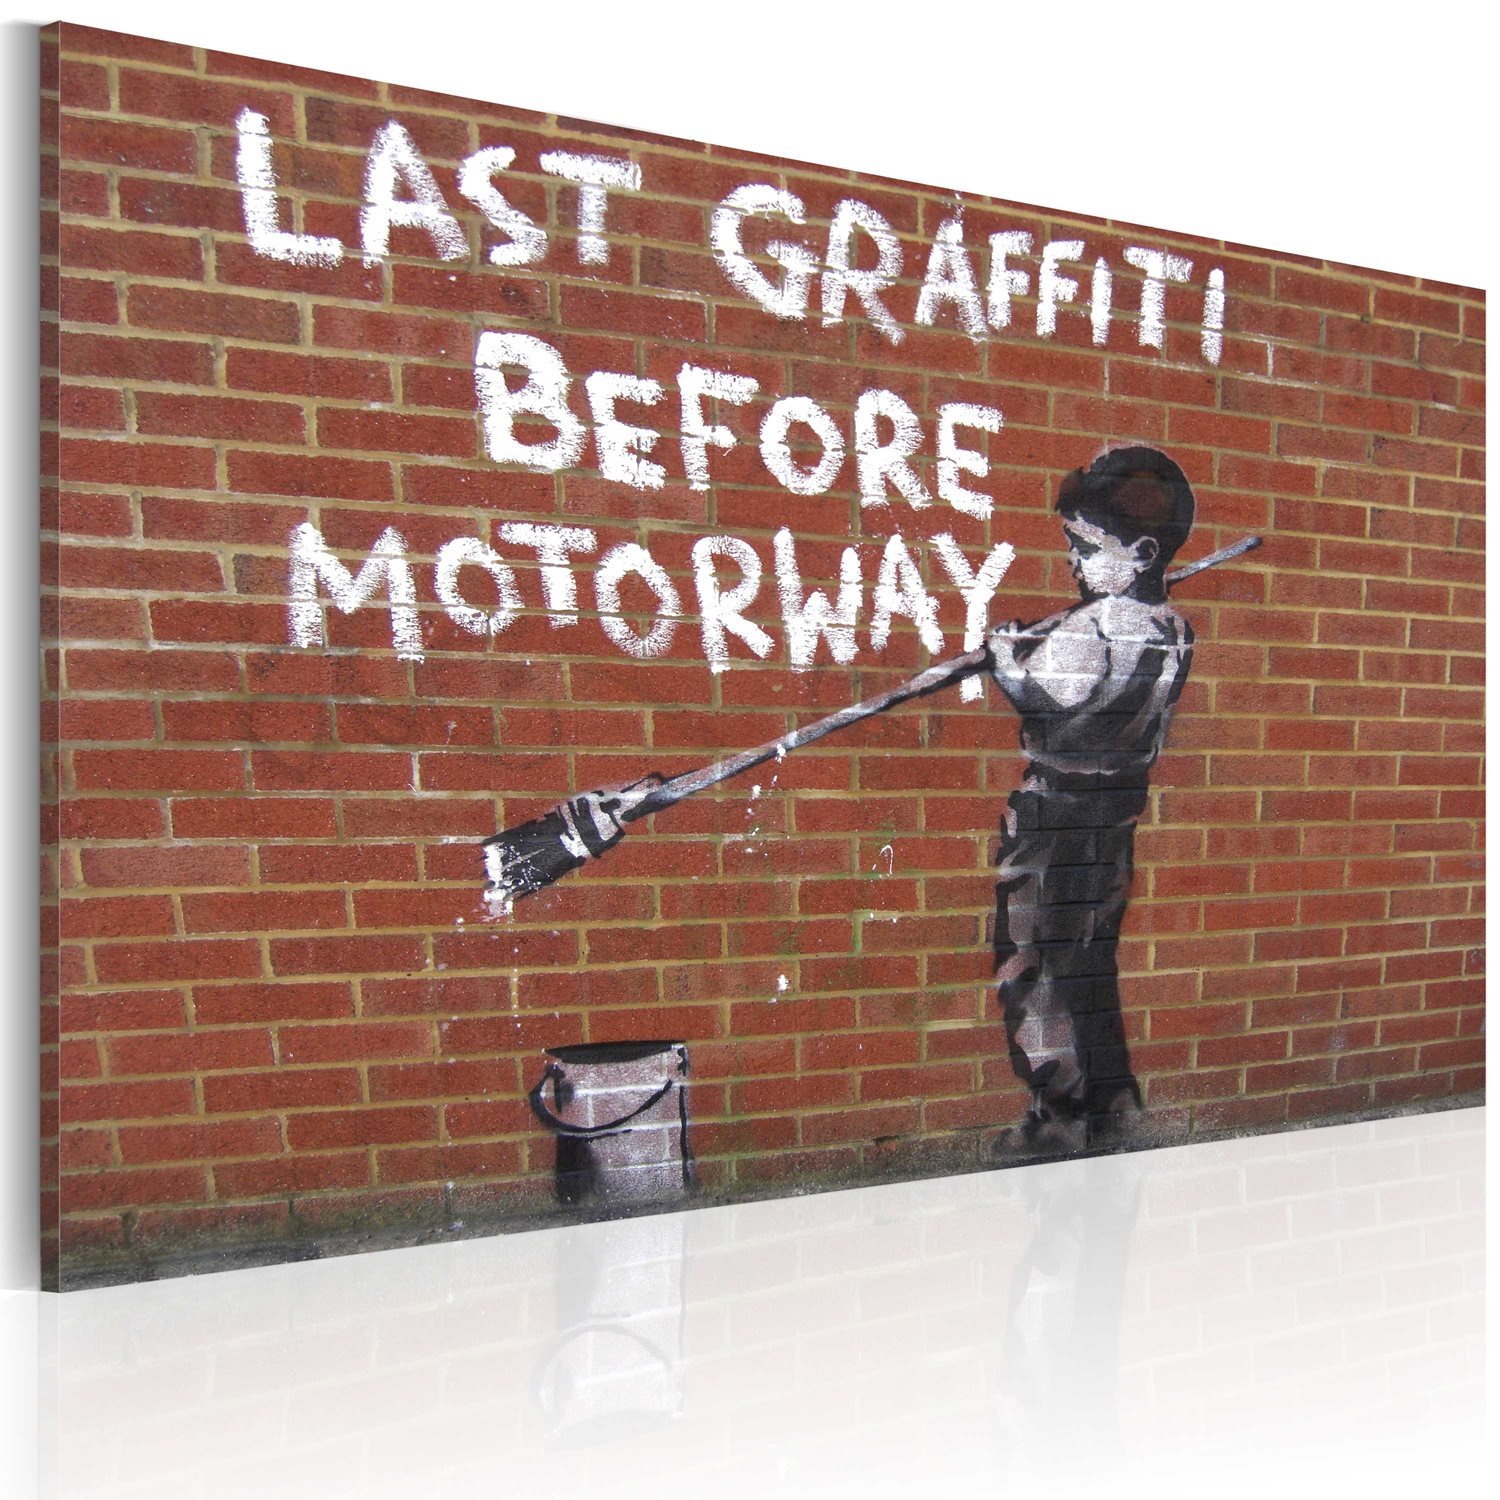 Πίνακας – Last graffiti before motorway (Banksy) 60×40